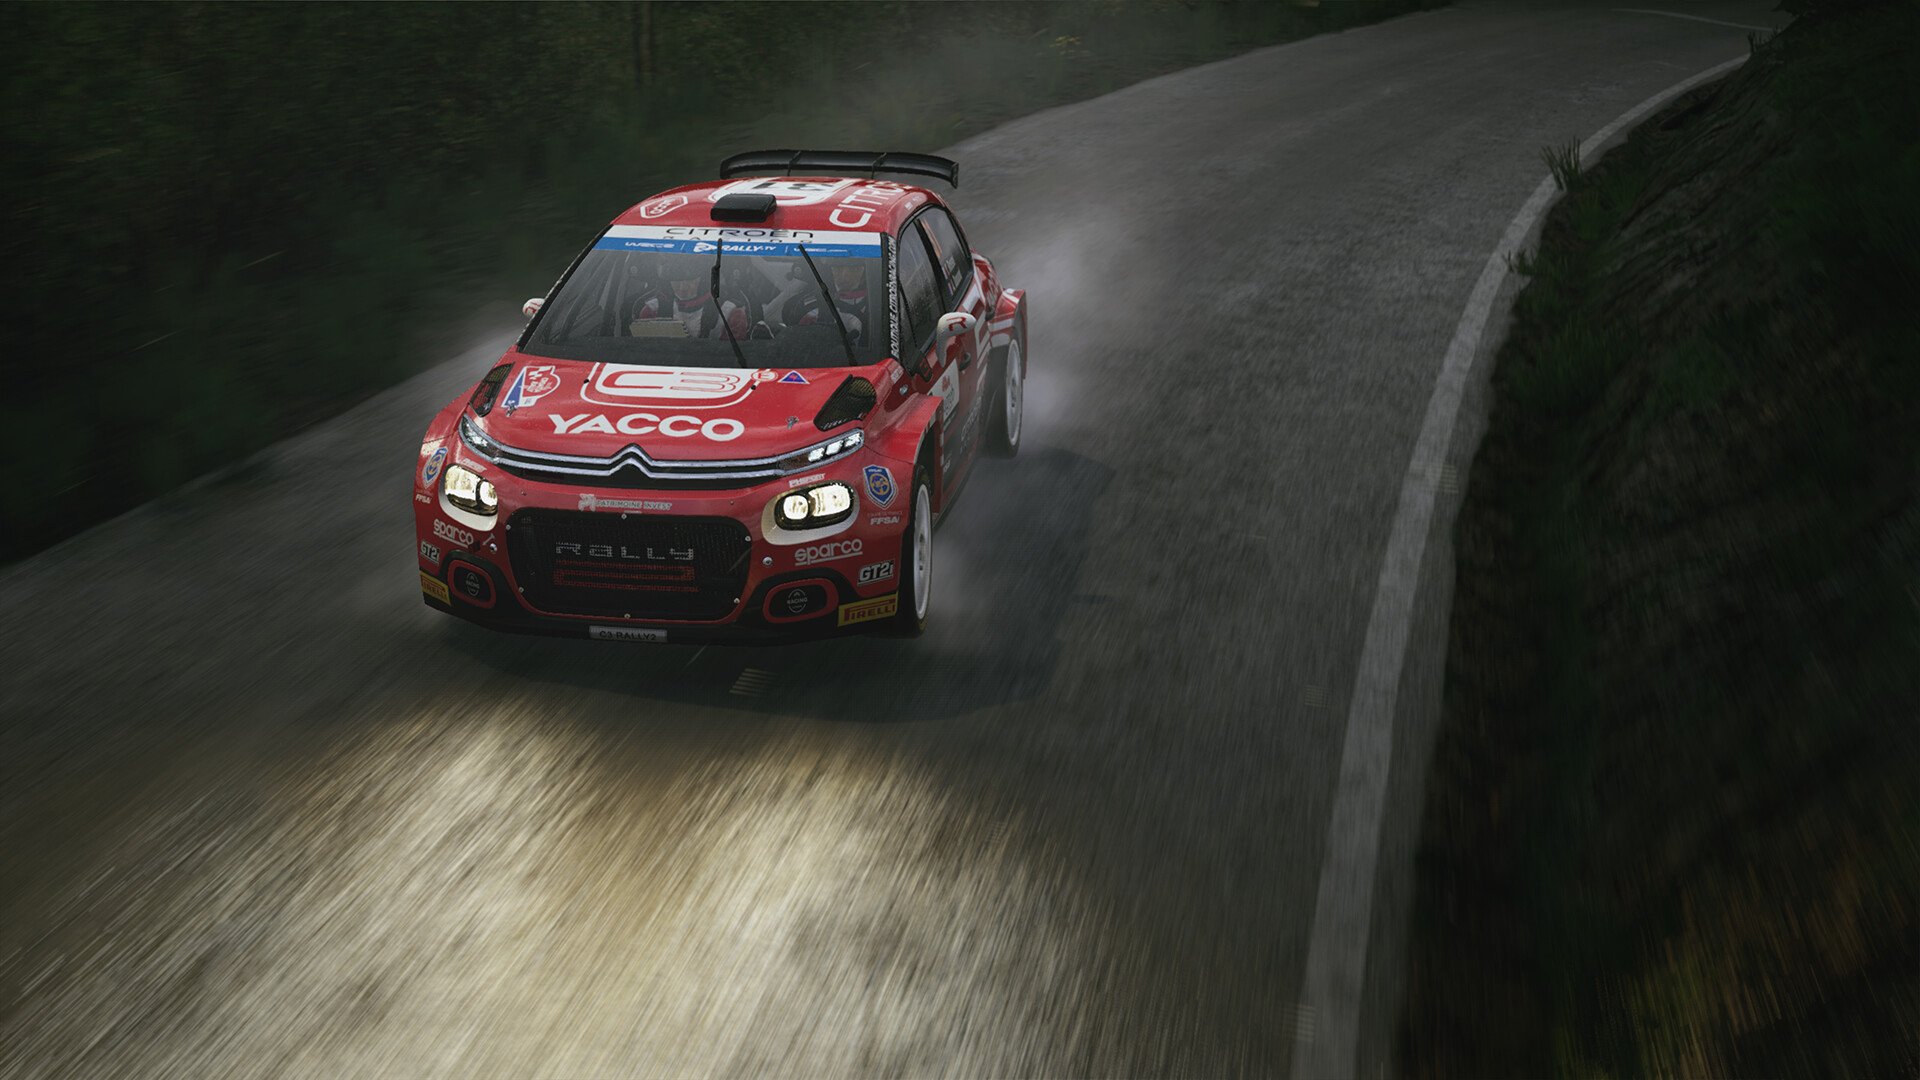 Tudo sobre WRC 7: veja requisitos e gameplay do jogo de corrida